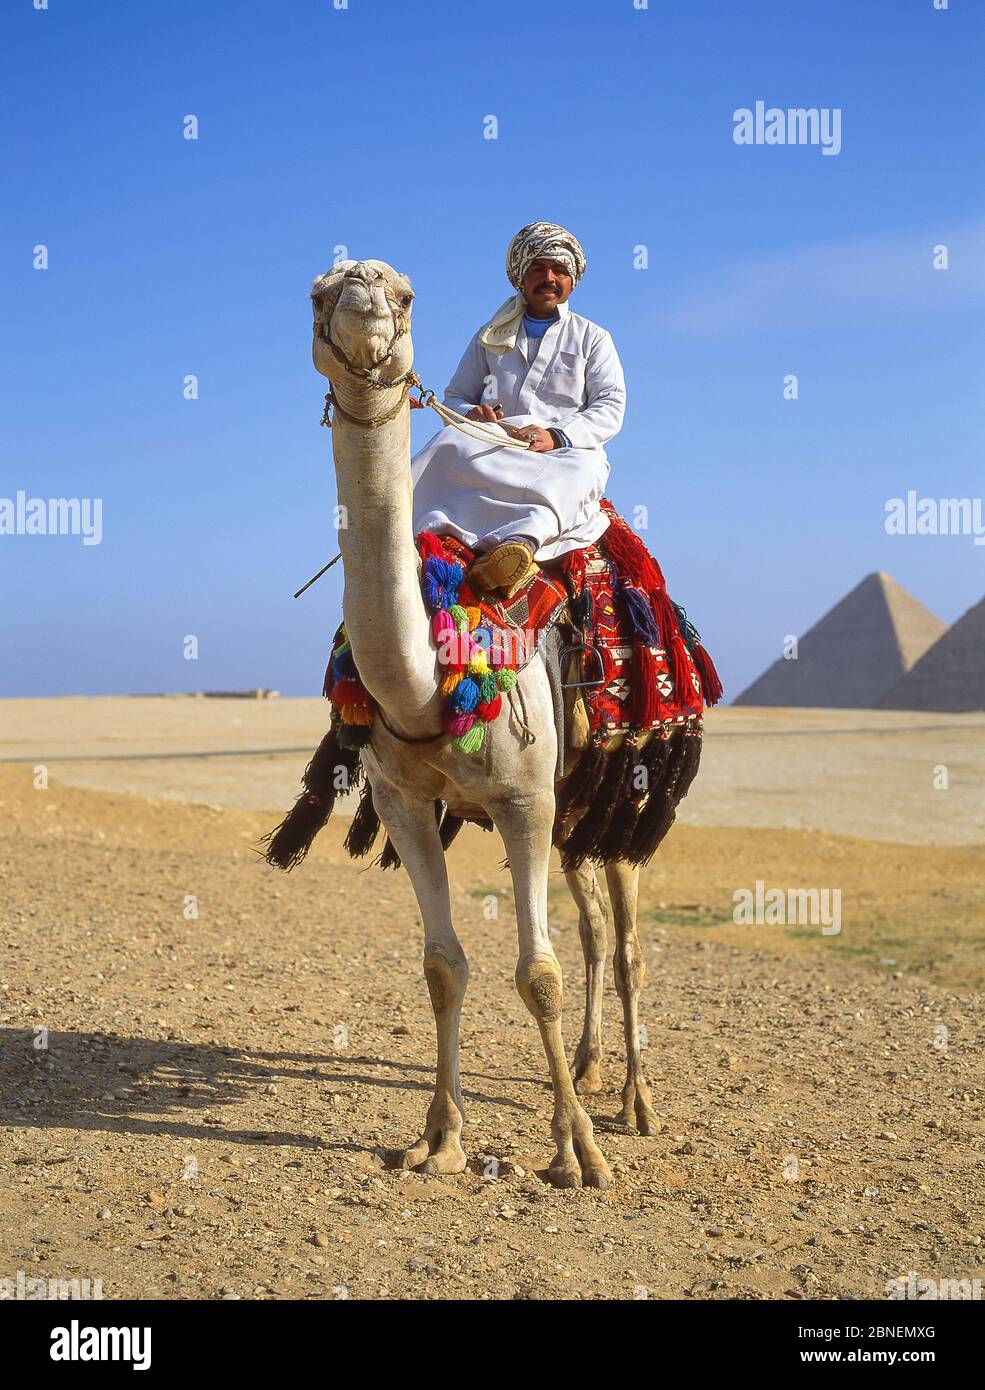 Chauffeur de chameau à dos de chameau, les grandes pyramides de Gizeh, Gizeh, Govergate de Gizeh, République d'Égypte Banque D'Images